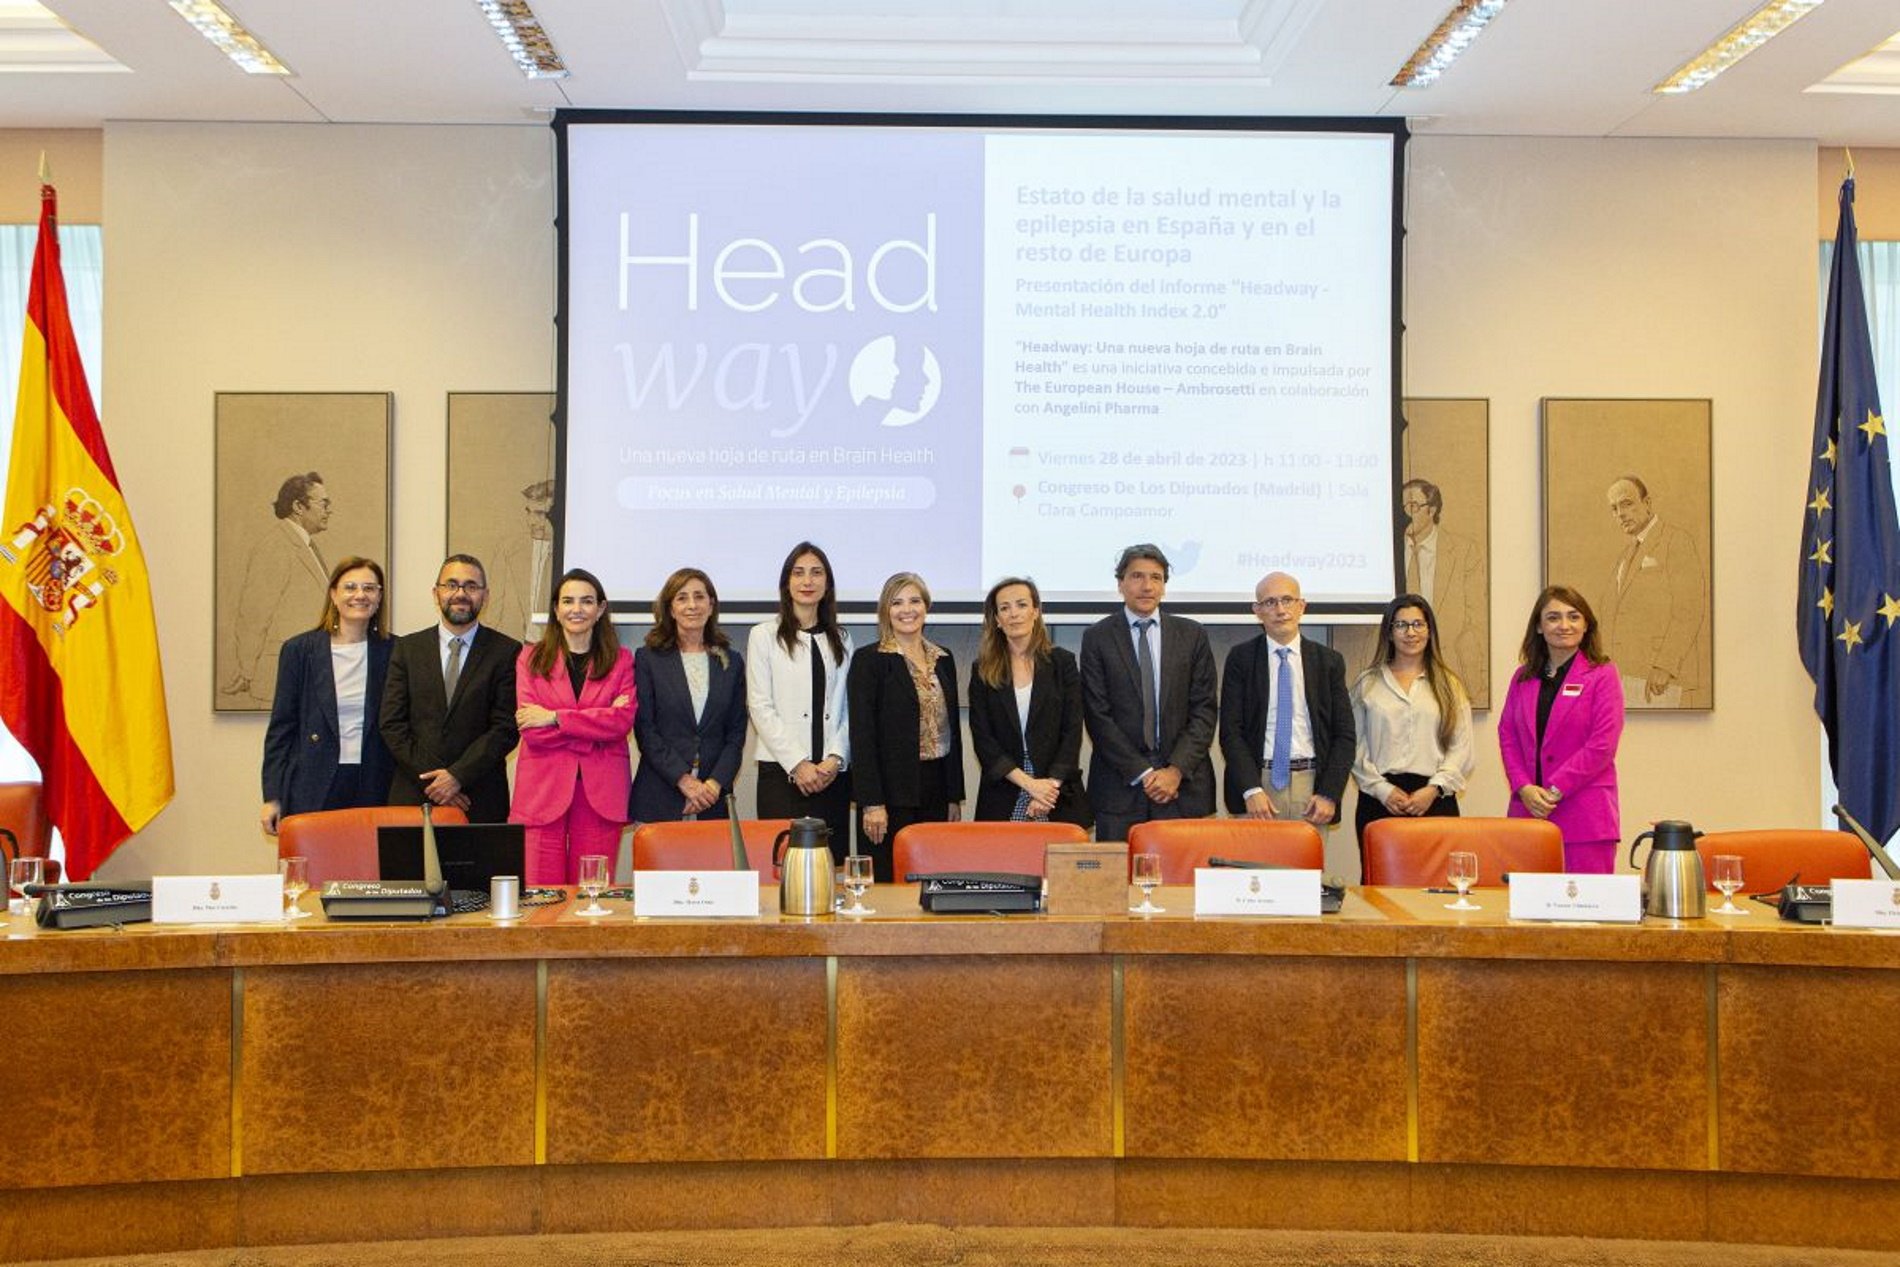 La situació socioeconòmica perjudica la salut mental dels espanyols, segons la iniciativa 'Headway'